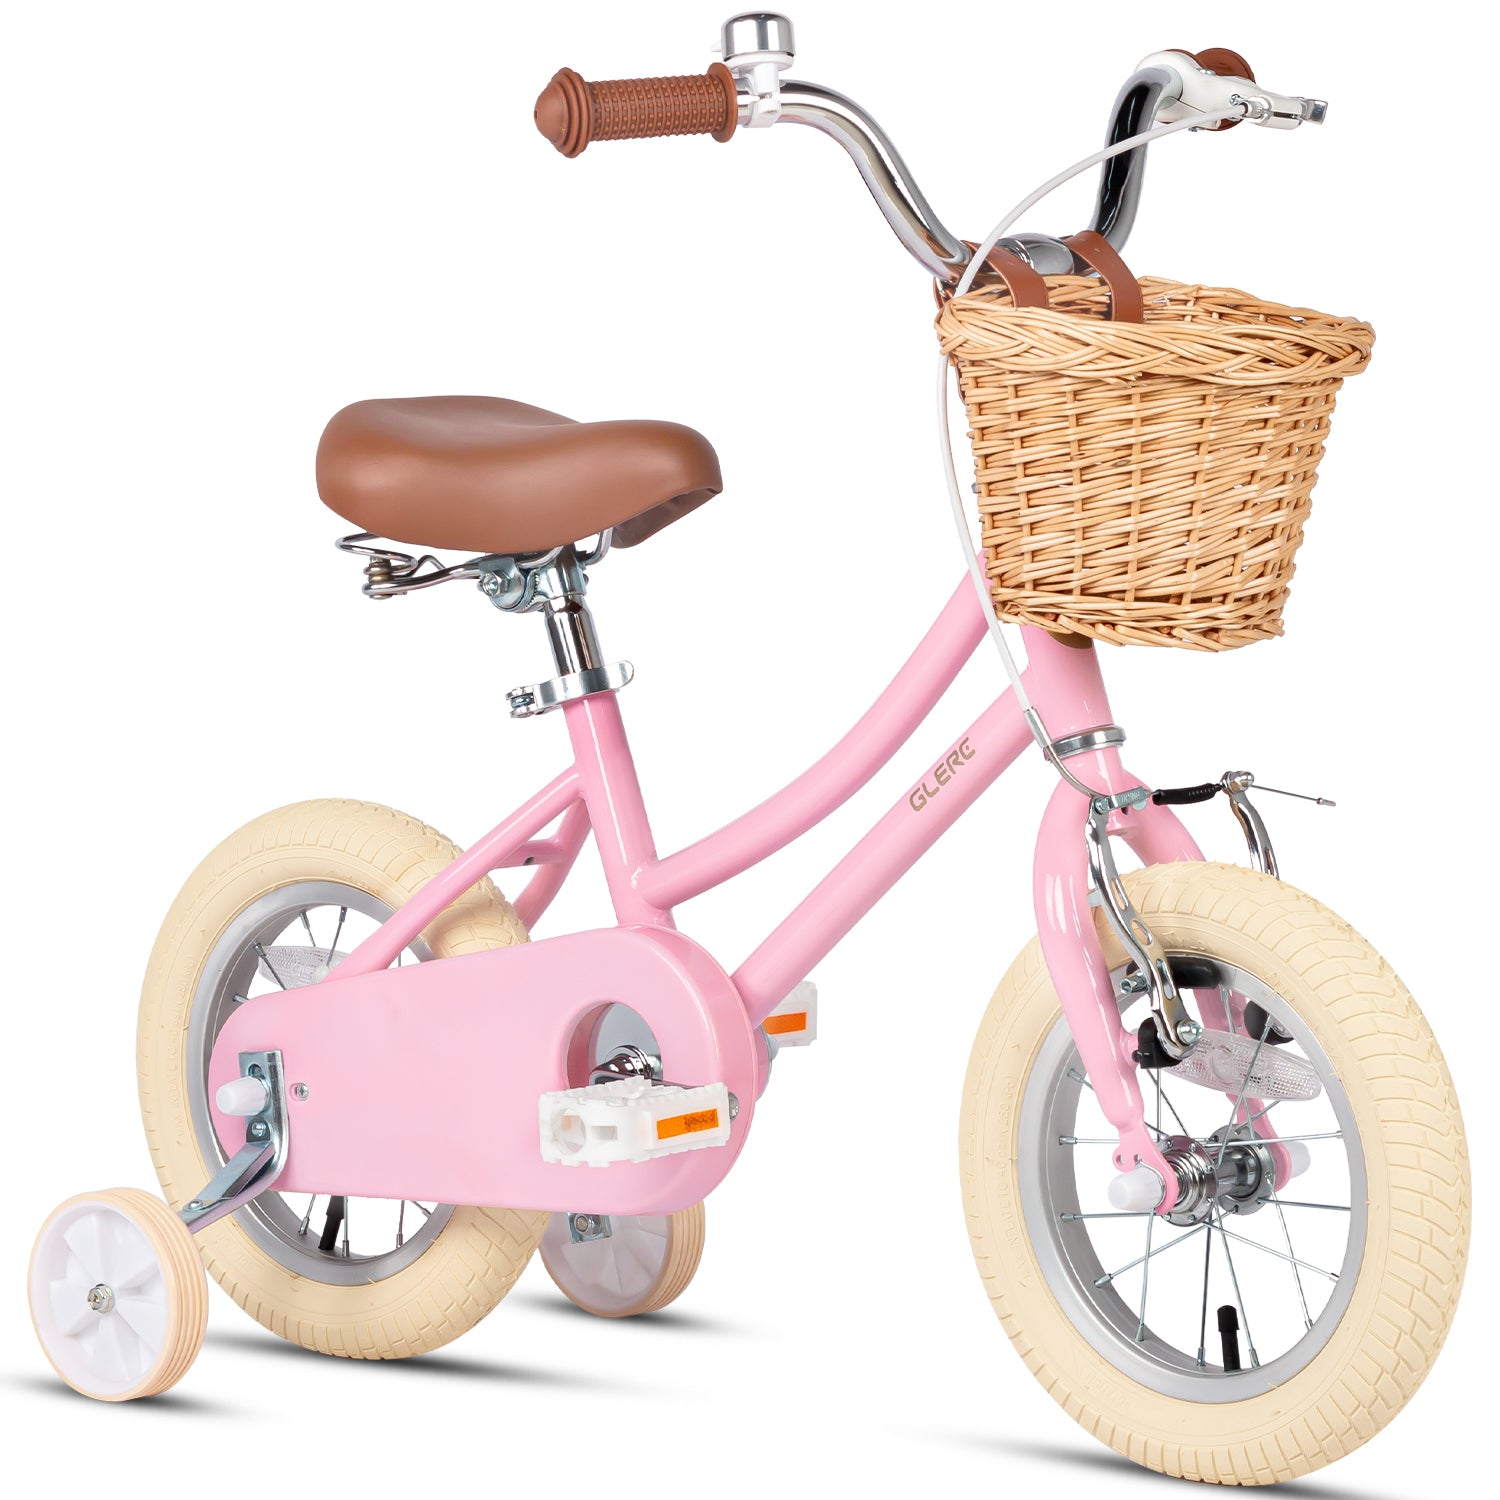 Bicicleta infantil 16 Conor Meteor rosa ⋆ Ciclo-mania